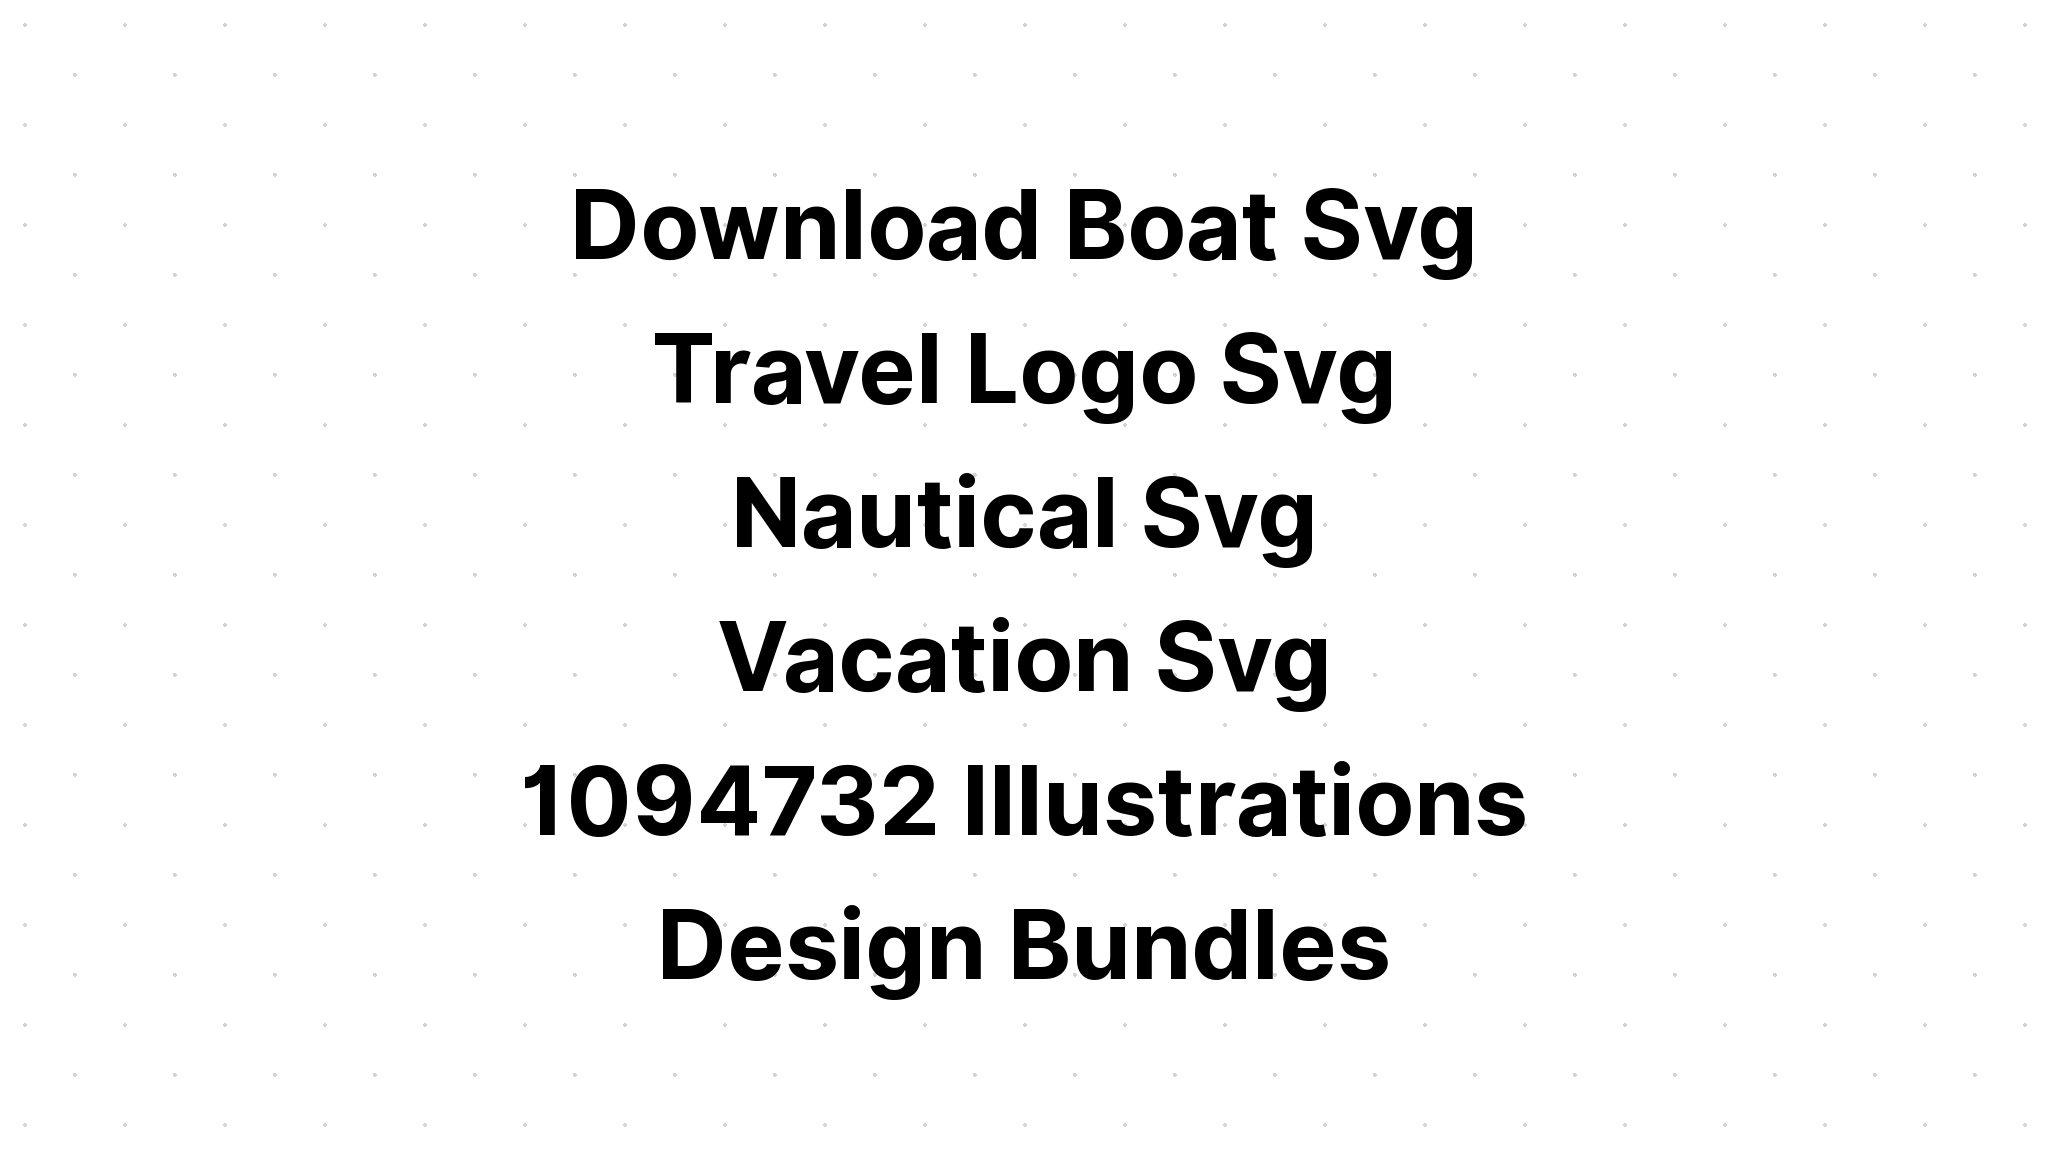 Download Boat Svg Monogram - Layered SVG Cut File